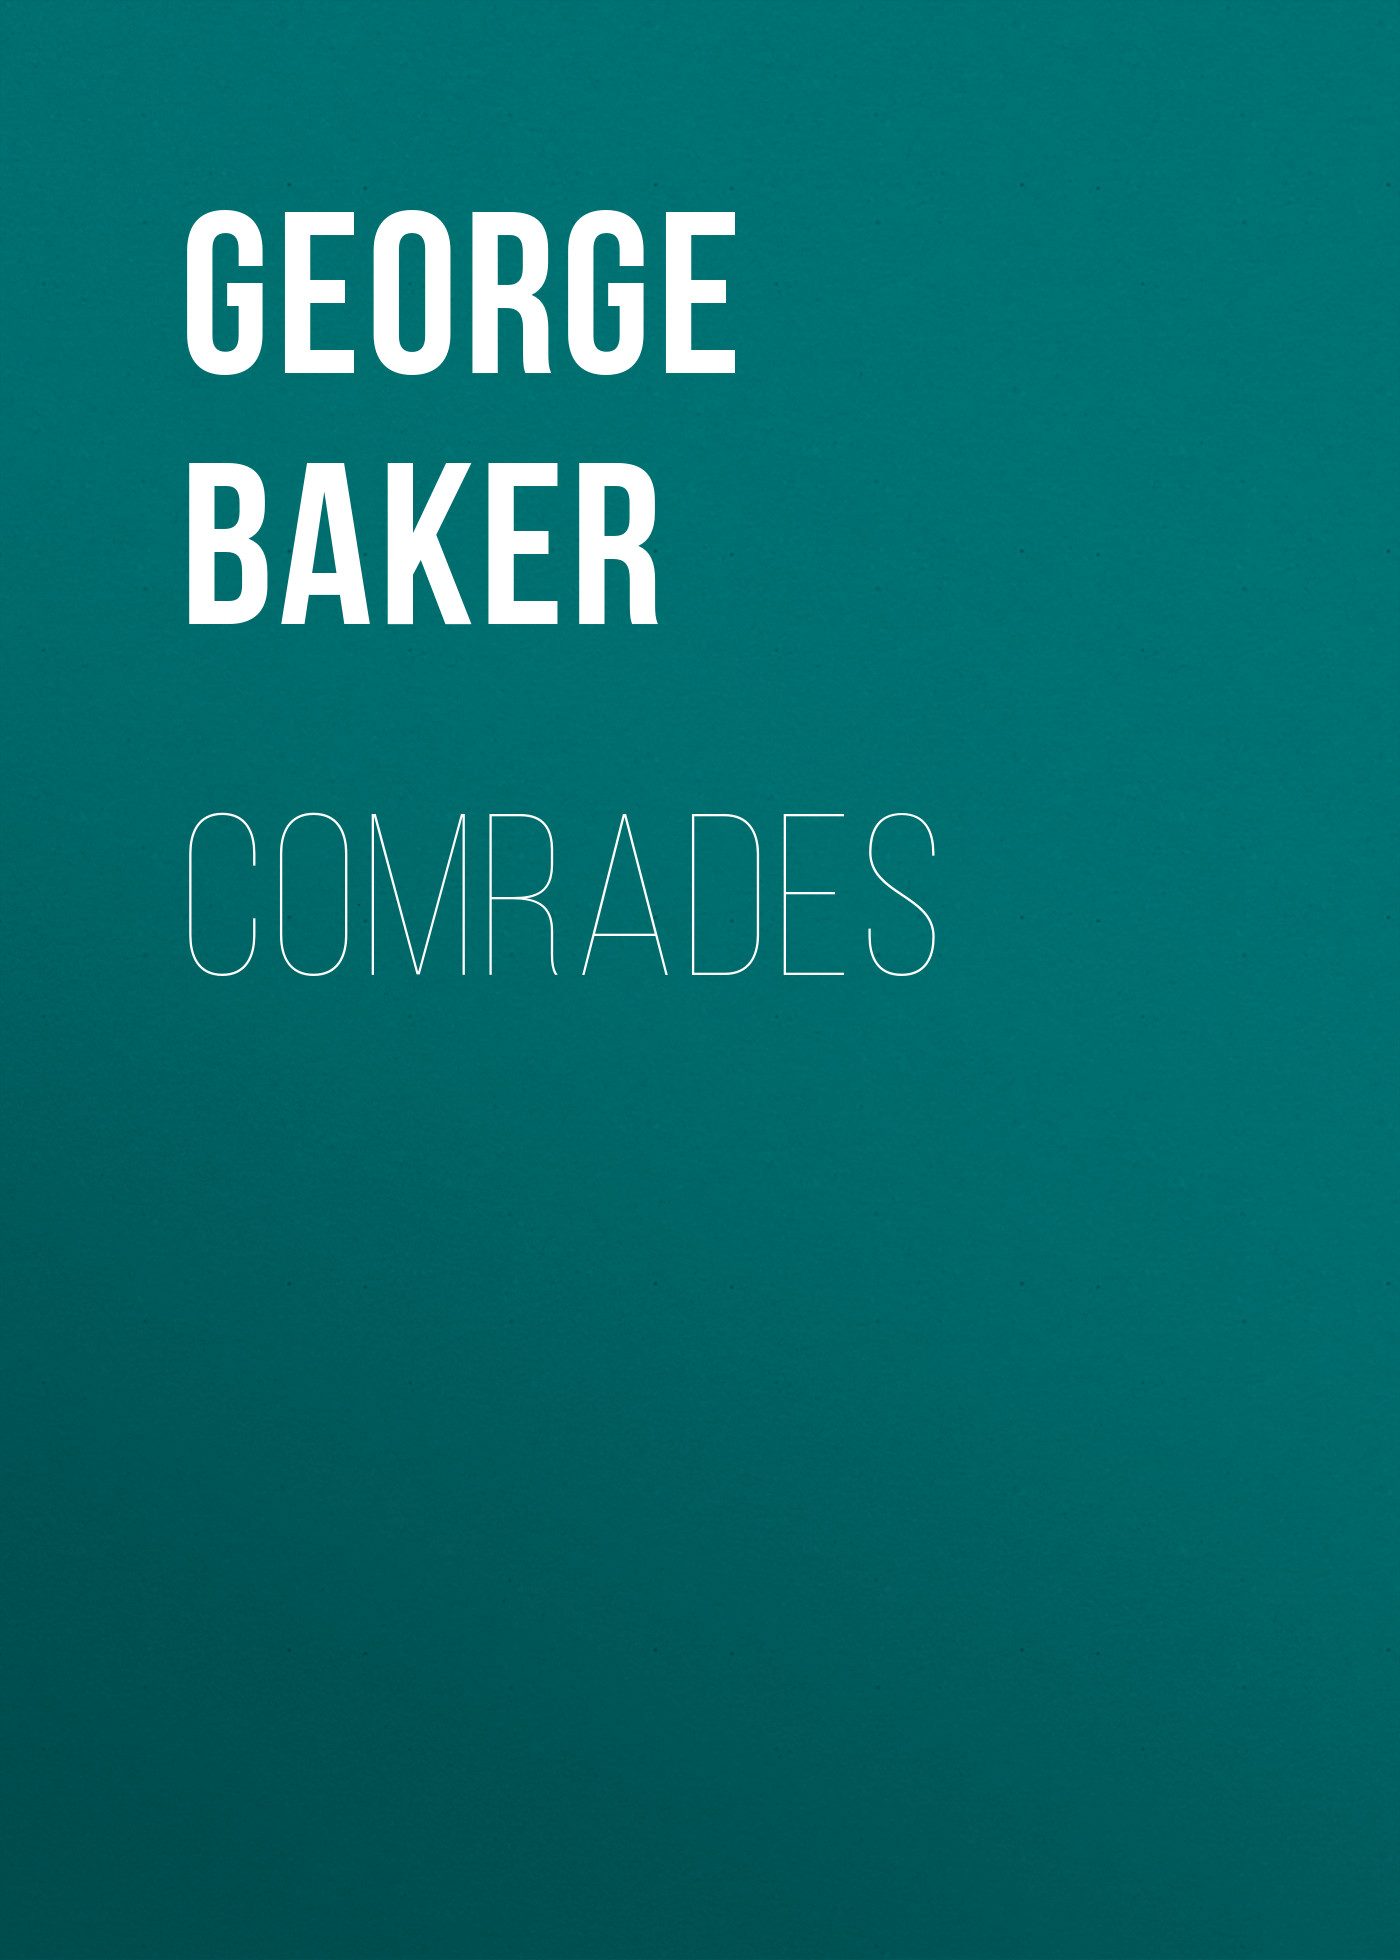 Книга Comrades из серии , созданная George Baker, может относится к жанру Зарубежная старинная литература, Зарубежная классика. Стоимость электронной книги Comrades с идентификатором 24174340 составляет 0 руб.